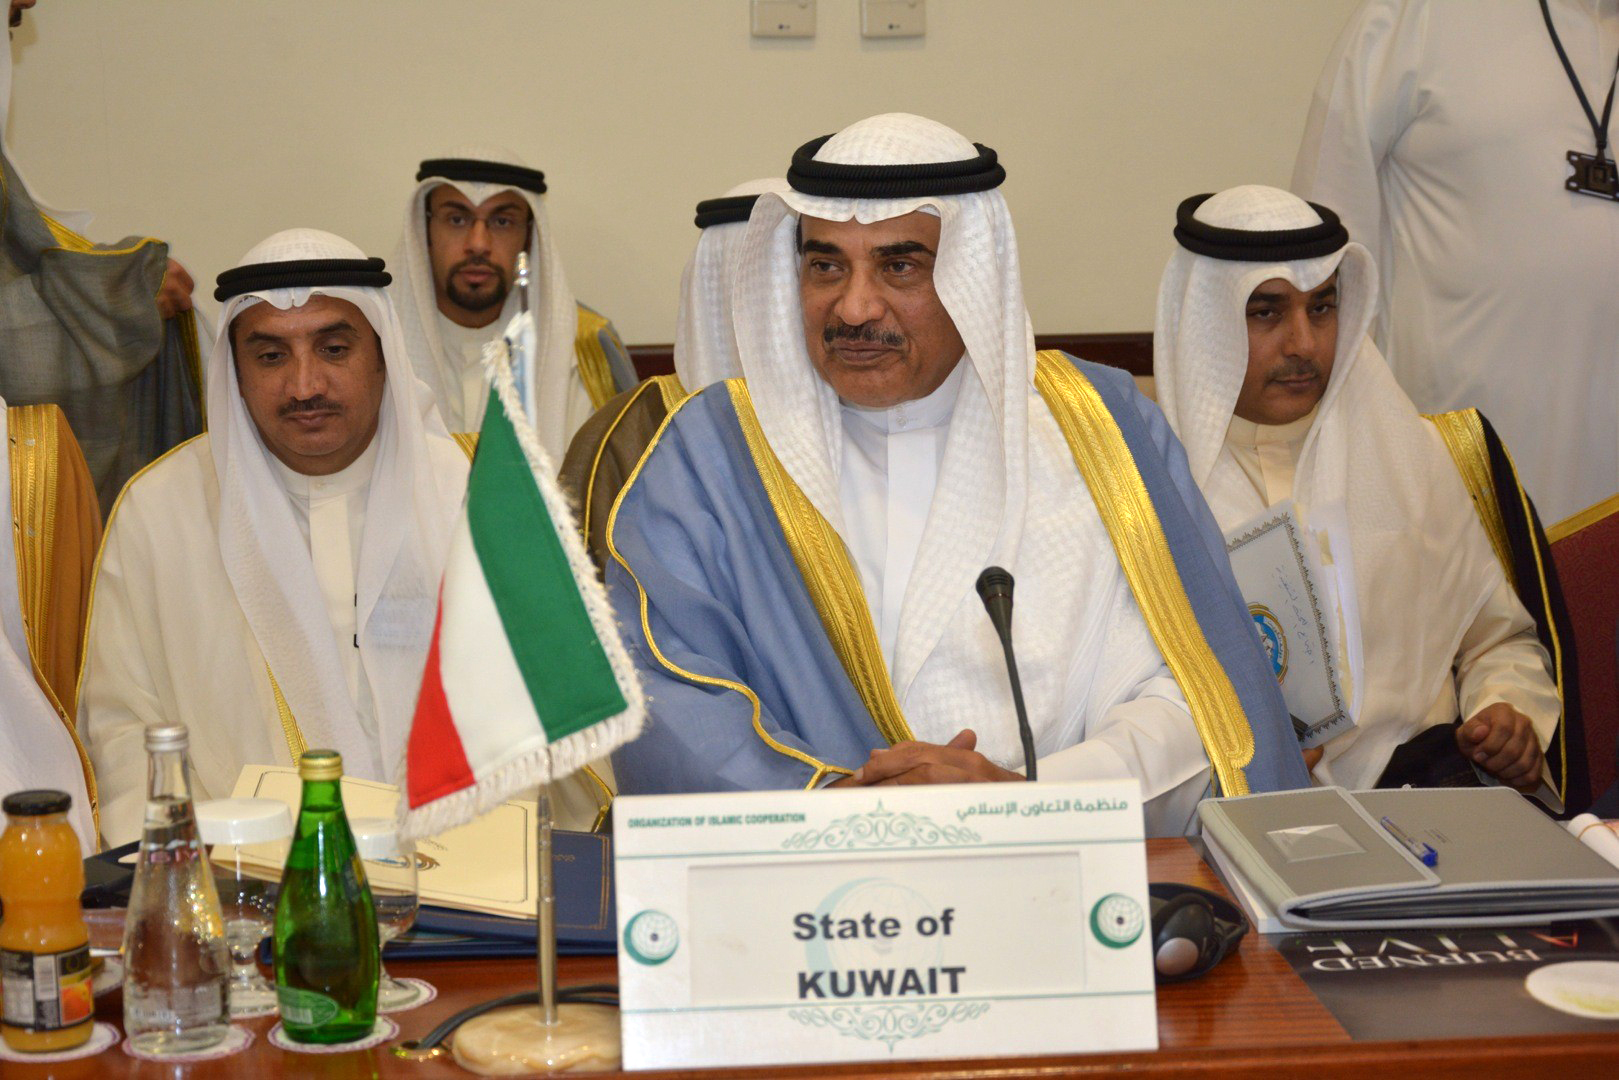 Kuwait's First Deputy Prime Minister and Foreign Minister Sheikh Sabah Al-Khaled Al-Hamad Al-Sabah